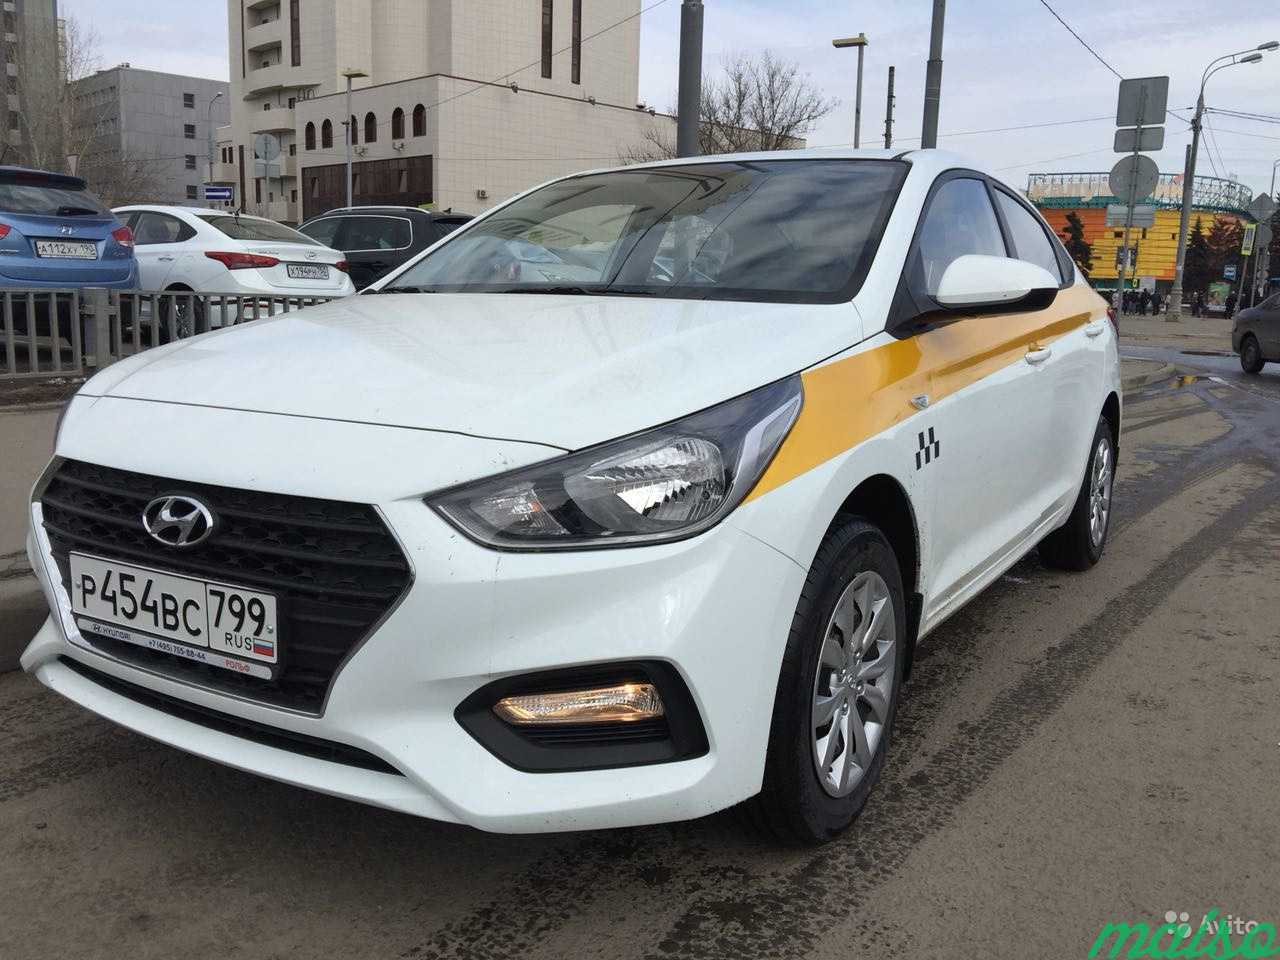 Аренда такси в нижнем новгороде. Hyundai Solaris 2018 такси. Hyundai Solaris 2017 такси. Hyundai Solaris taksi белый. Белый Хендай Солярис такси.